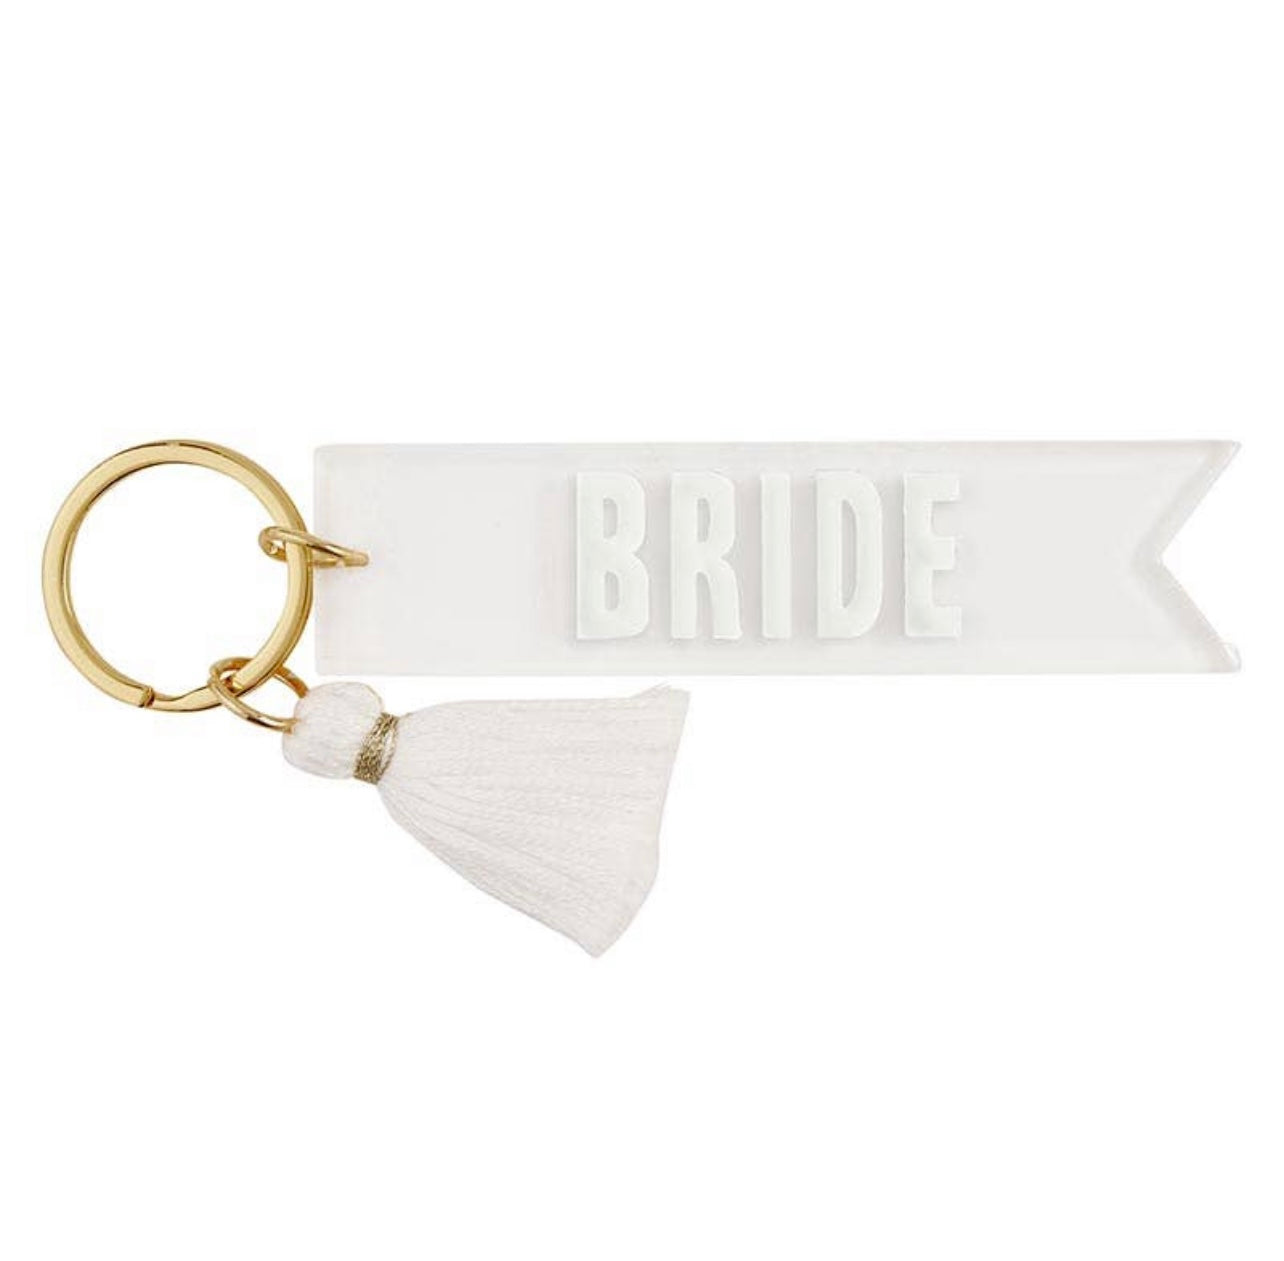 Bride Keychain